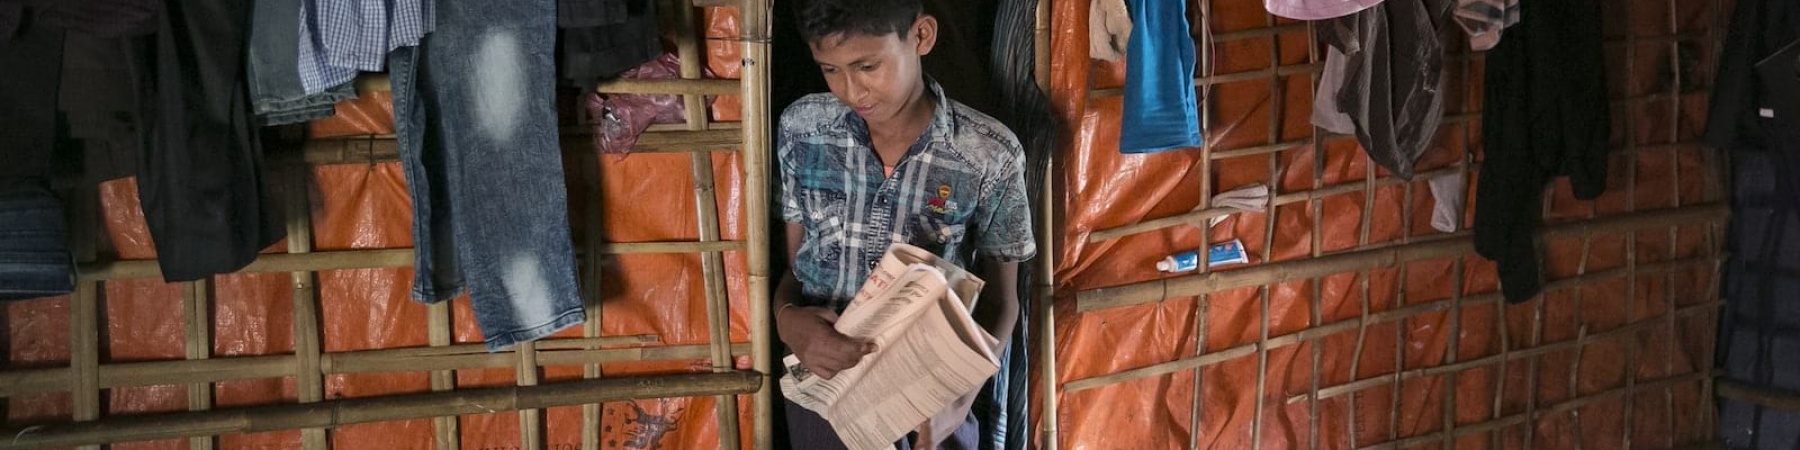 bambino-rohingya-in-tenda